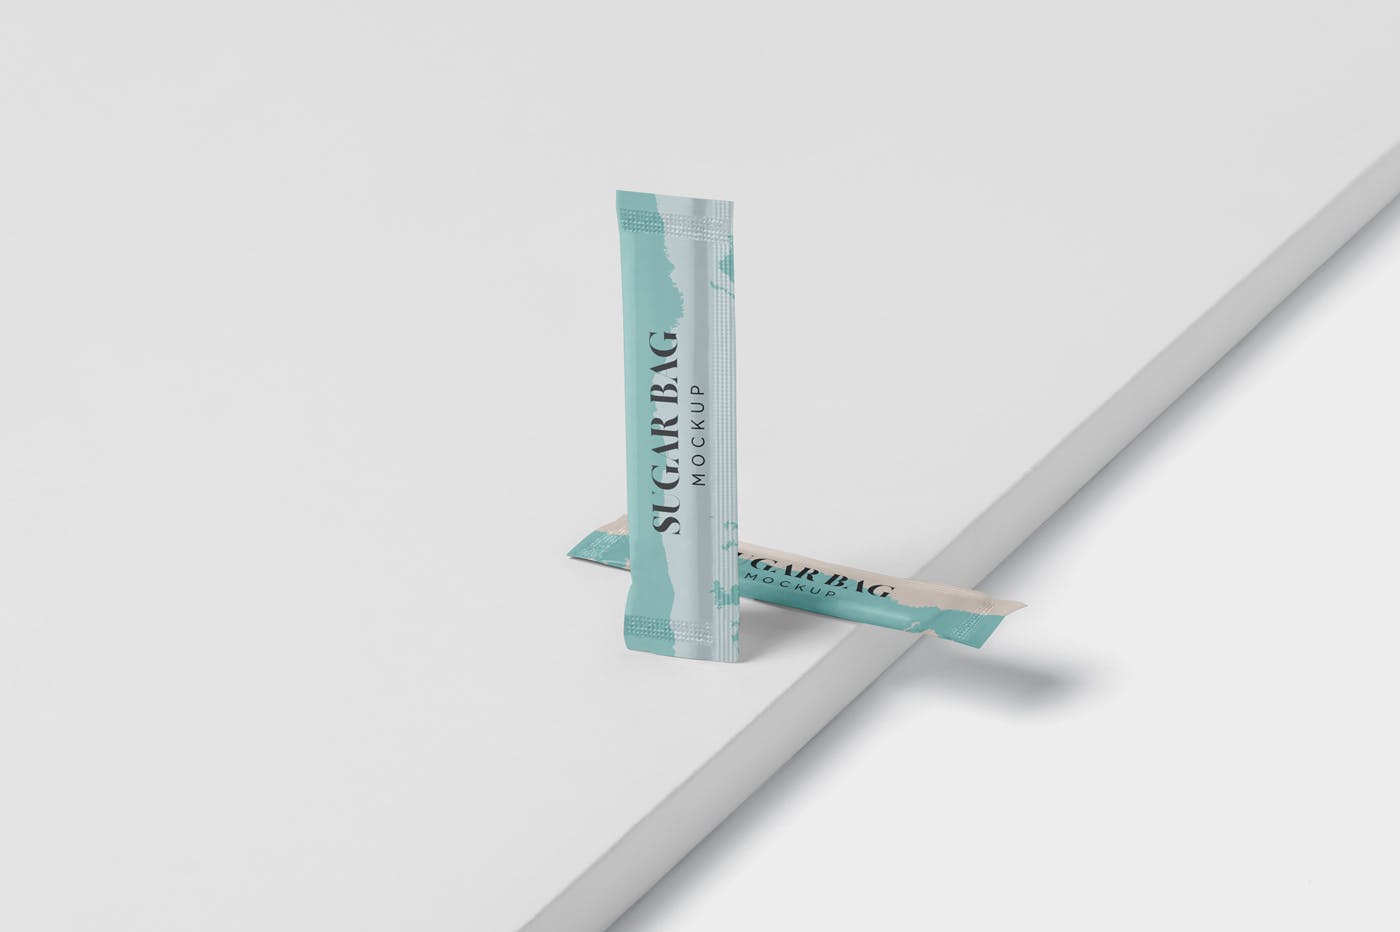 白砂糖长条包装纸袋外观设计图第一素材精选 Sugar Bag Mockup – Slim Rectangle插图(3)